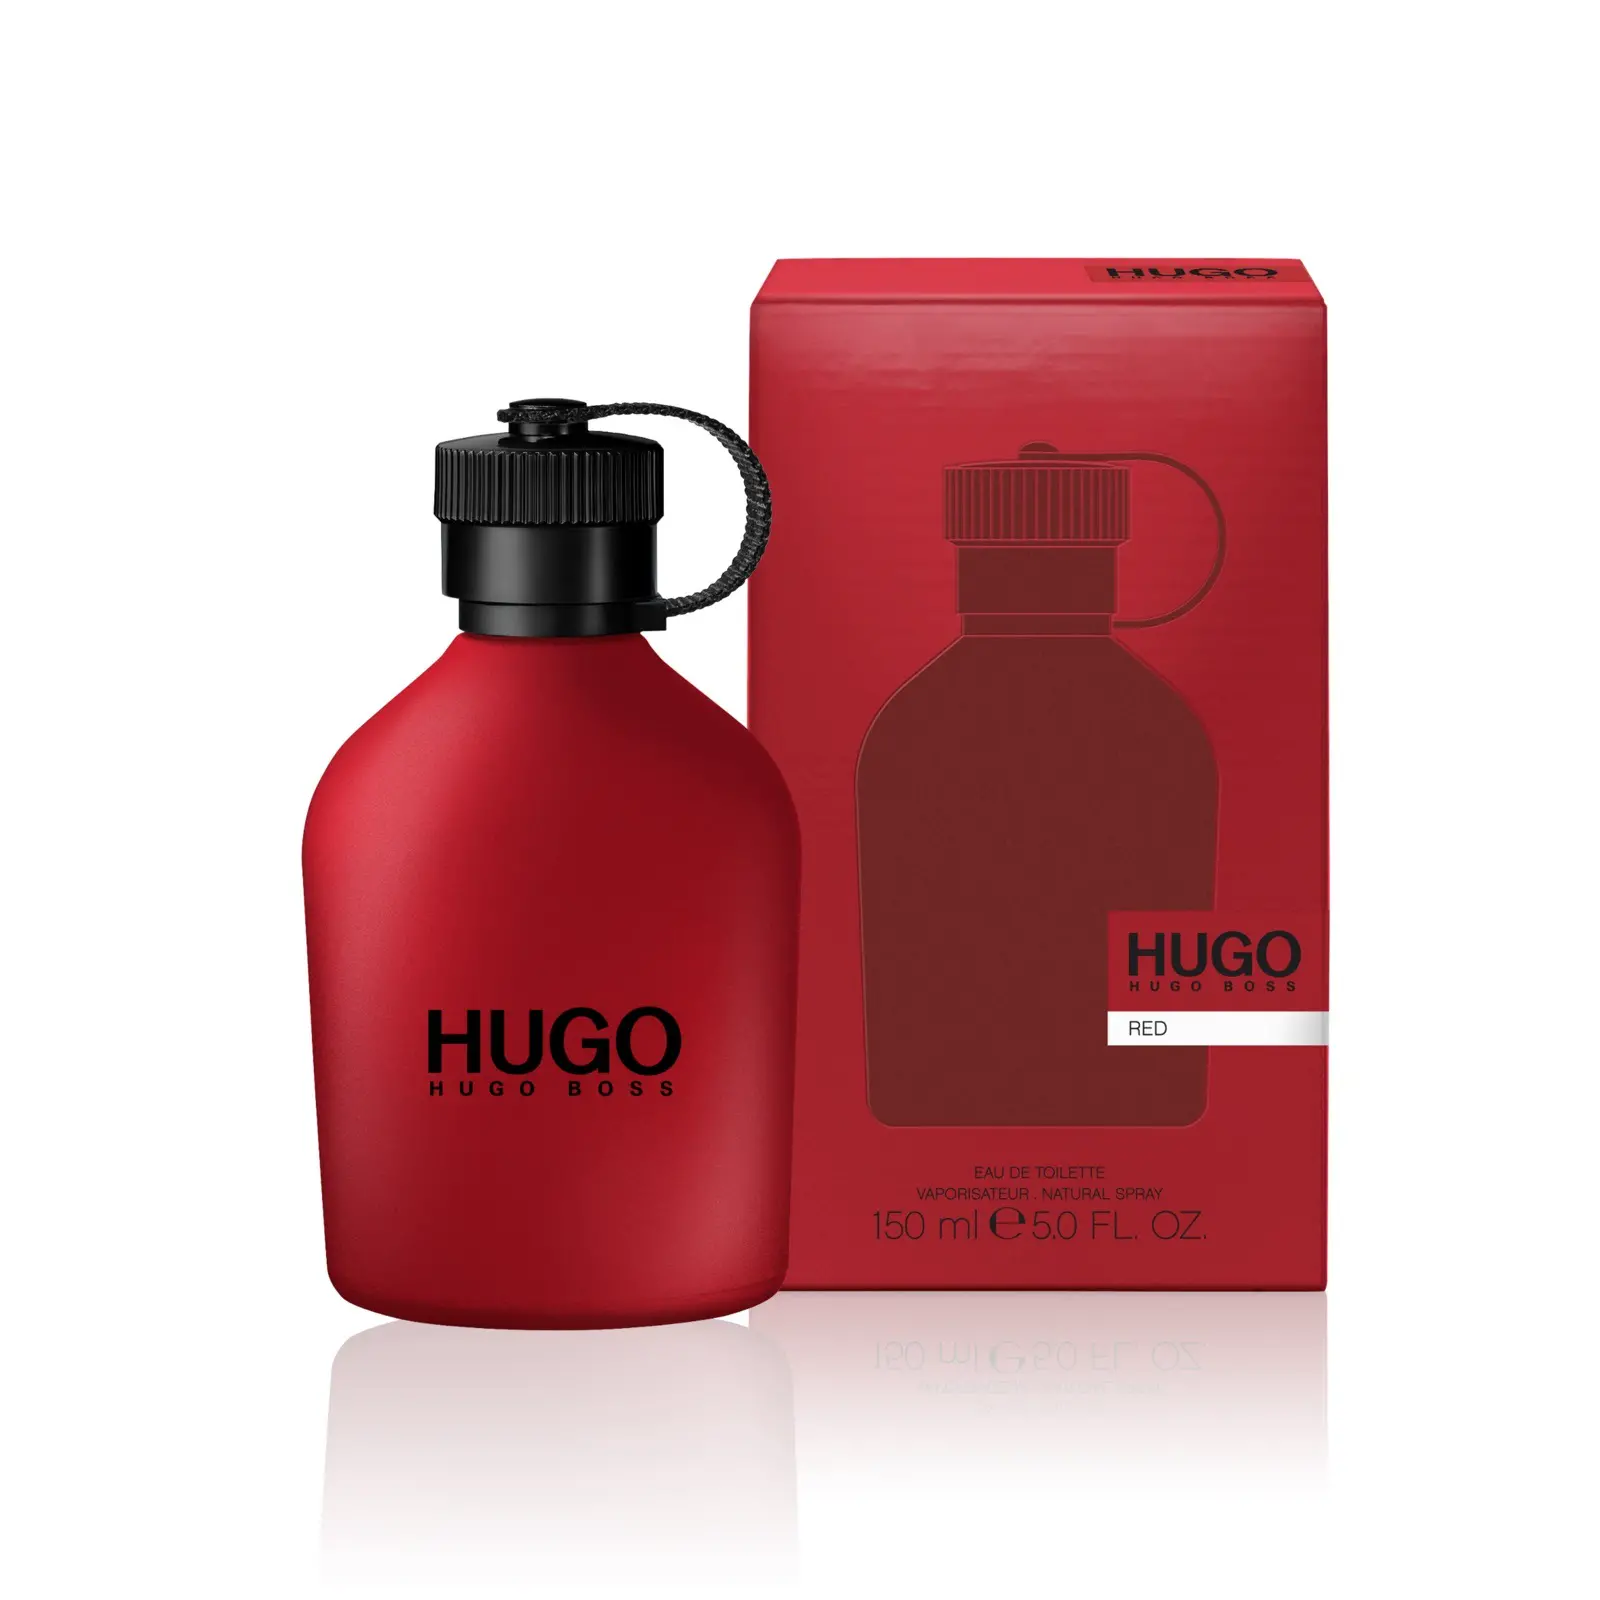 Хуго босс ред. Туалетная вода Hugo Boss Hugo man, 150 мл. 117. Hugo Boss Hugo Red 75мл. Hugo Boss туалетная вода 100 мл. Hugo Boss Red EDT Хьюго босс ред туалетная вода 150 ml.